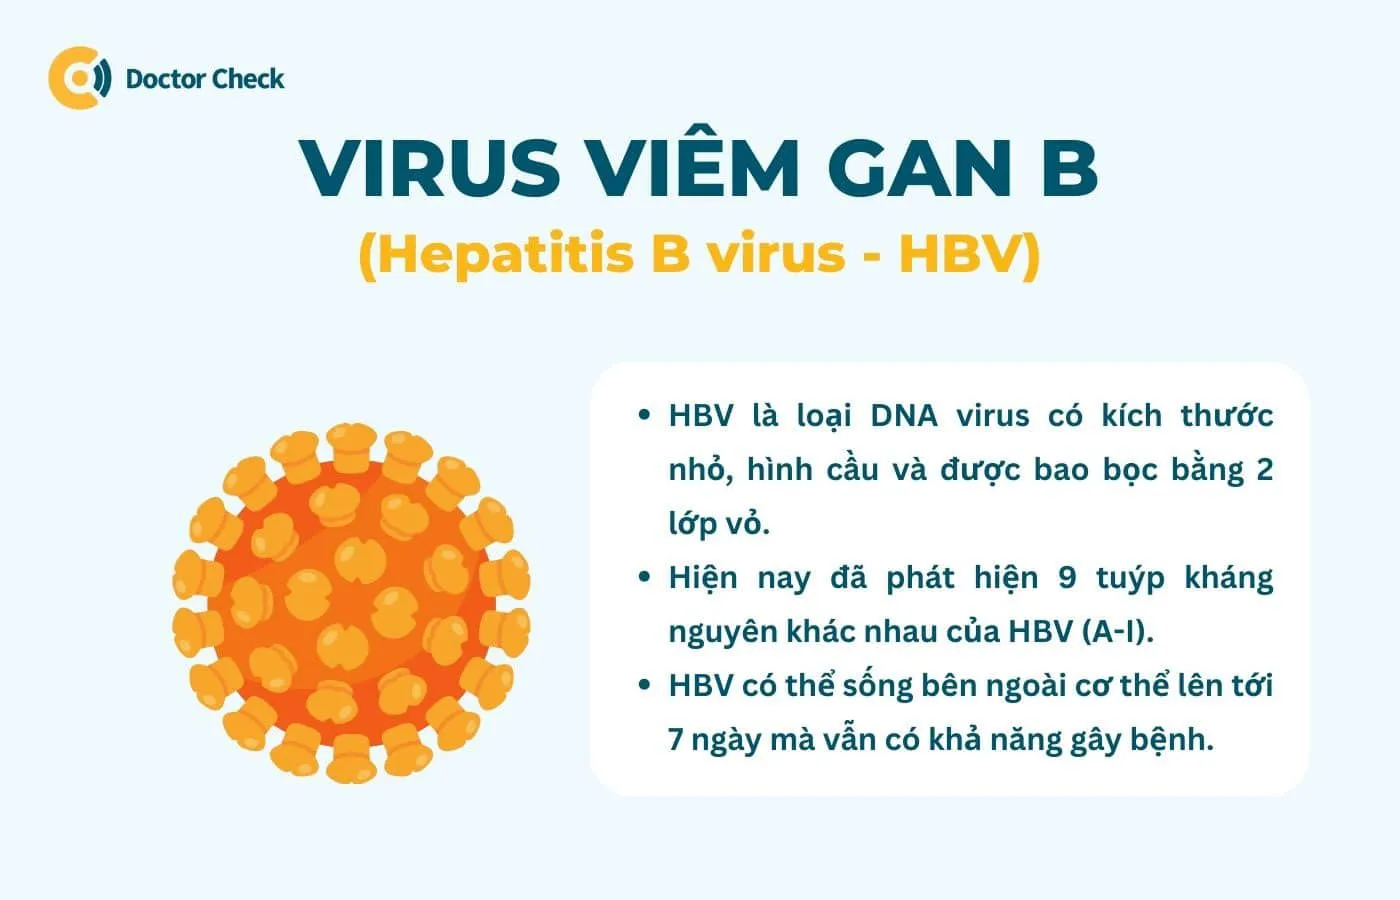 HBV (virus viêm gan b) là gì?